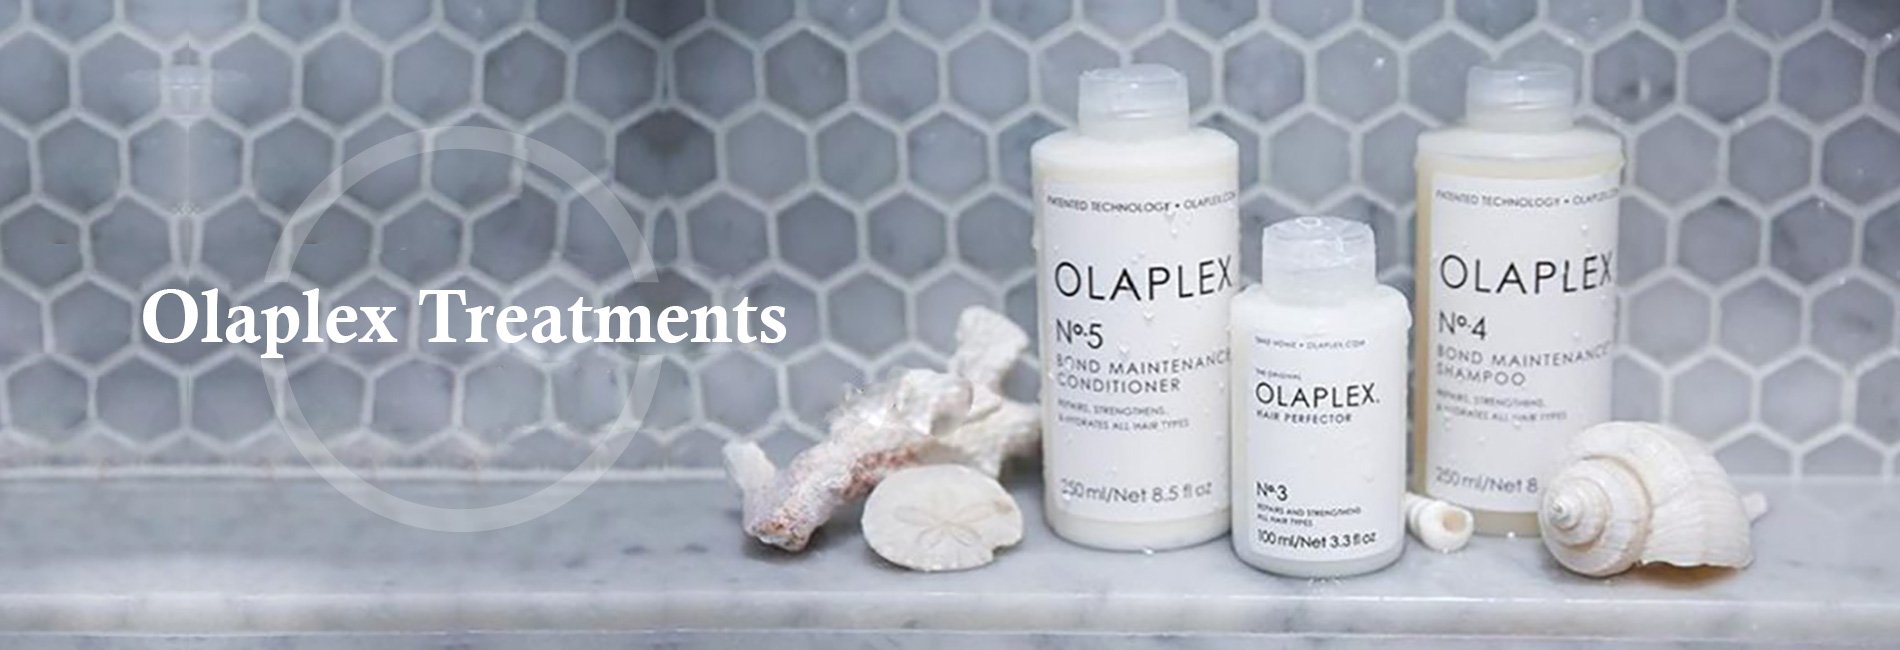 Olaplex Treatments 2